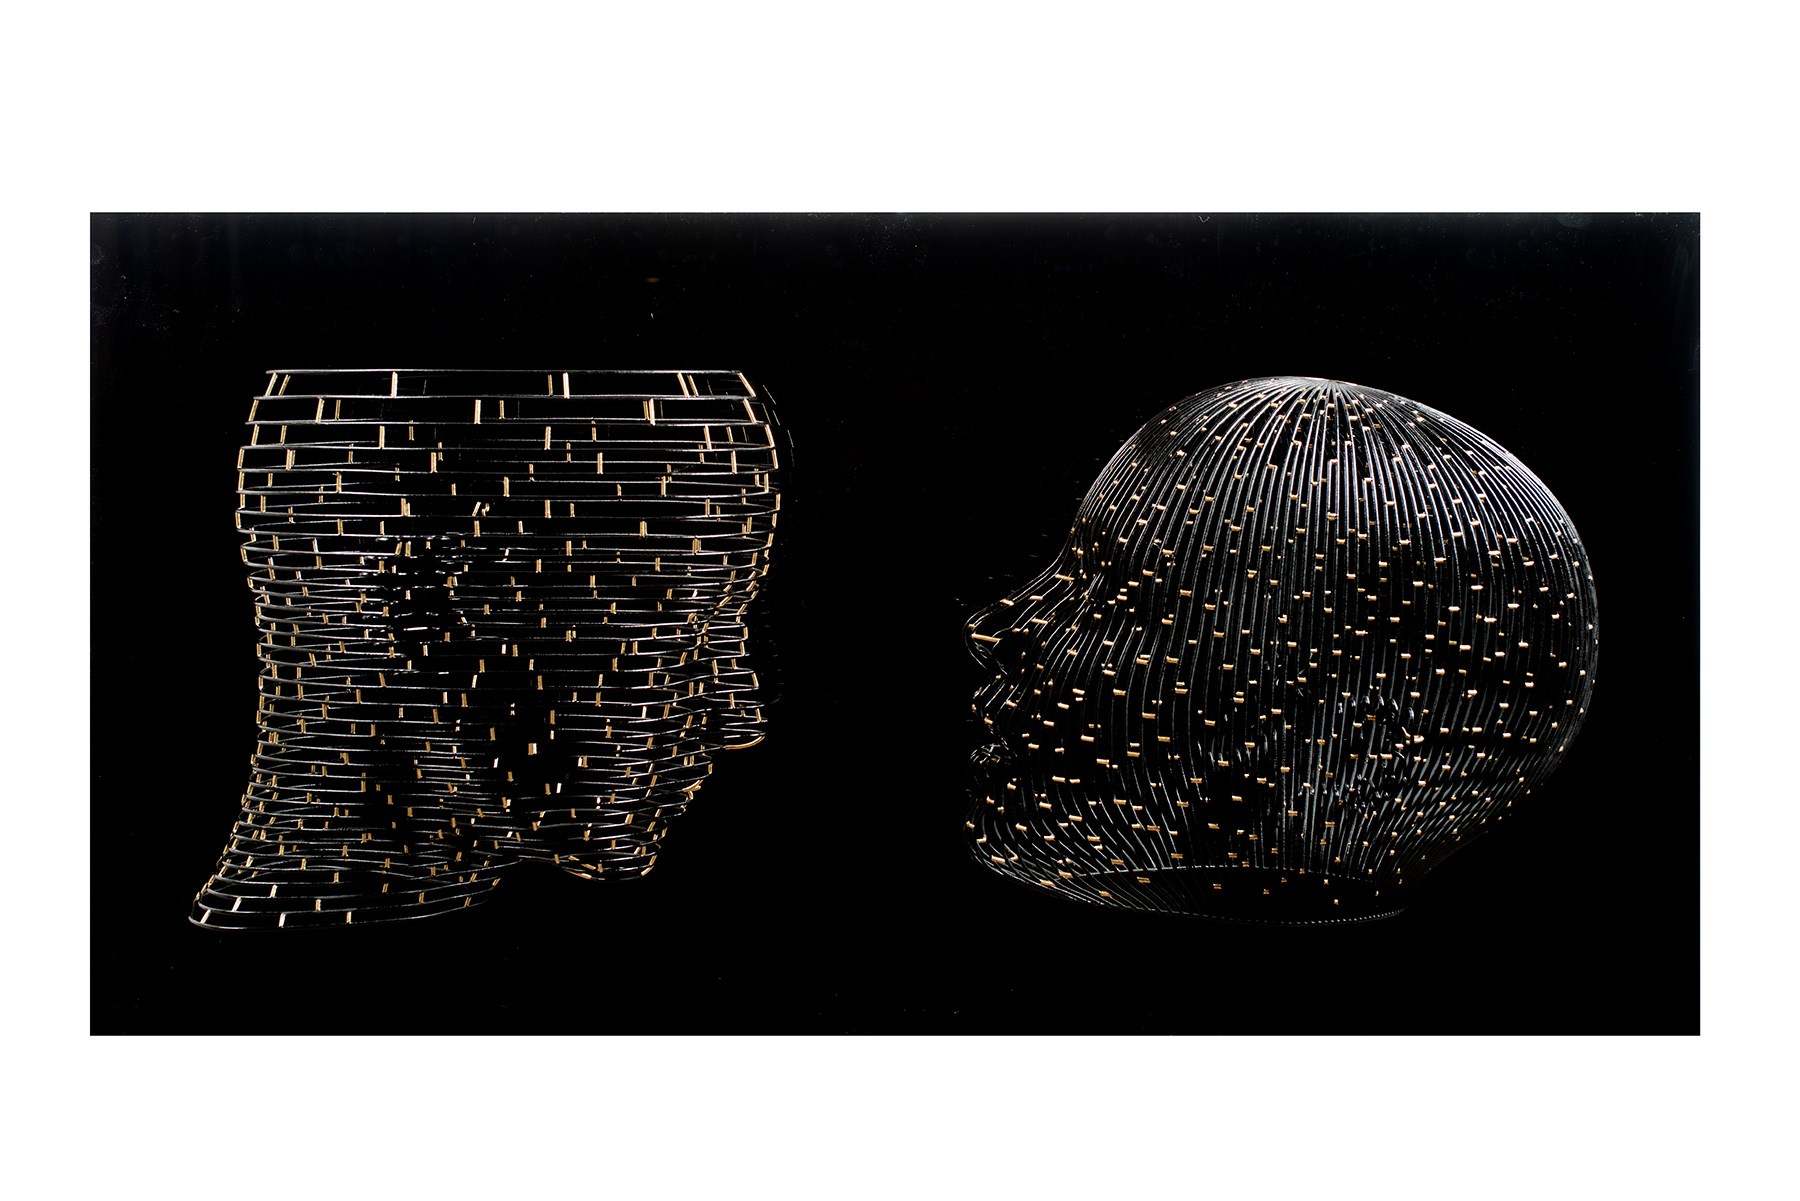 Bonzanos A.G., Quando parli ad occhi chiusi, sogno ad occhi aperti, Duraform SLS wire sculpture, made with 3D printer, 70x135x35 cm, 2018.